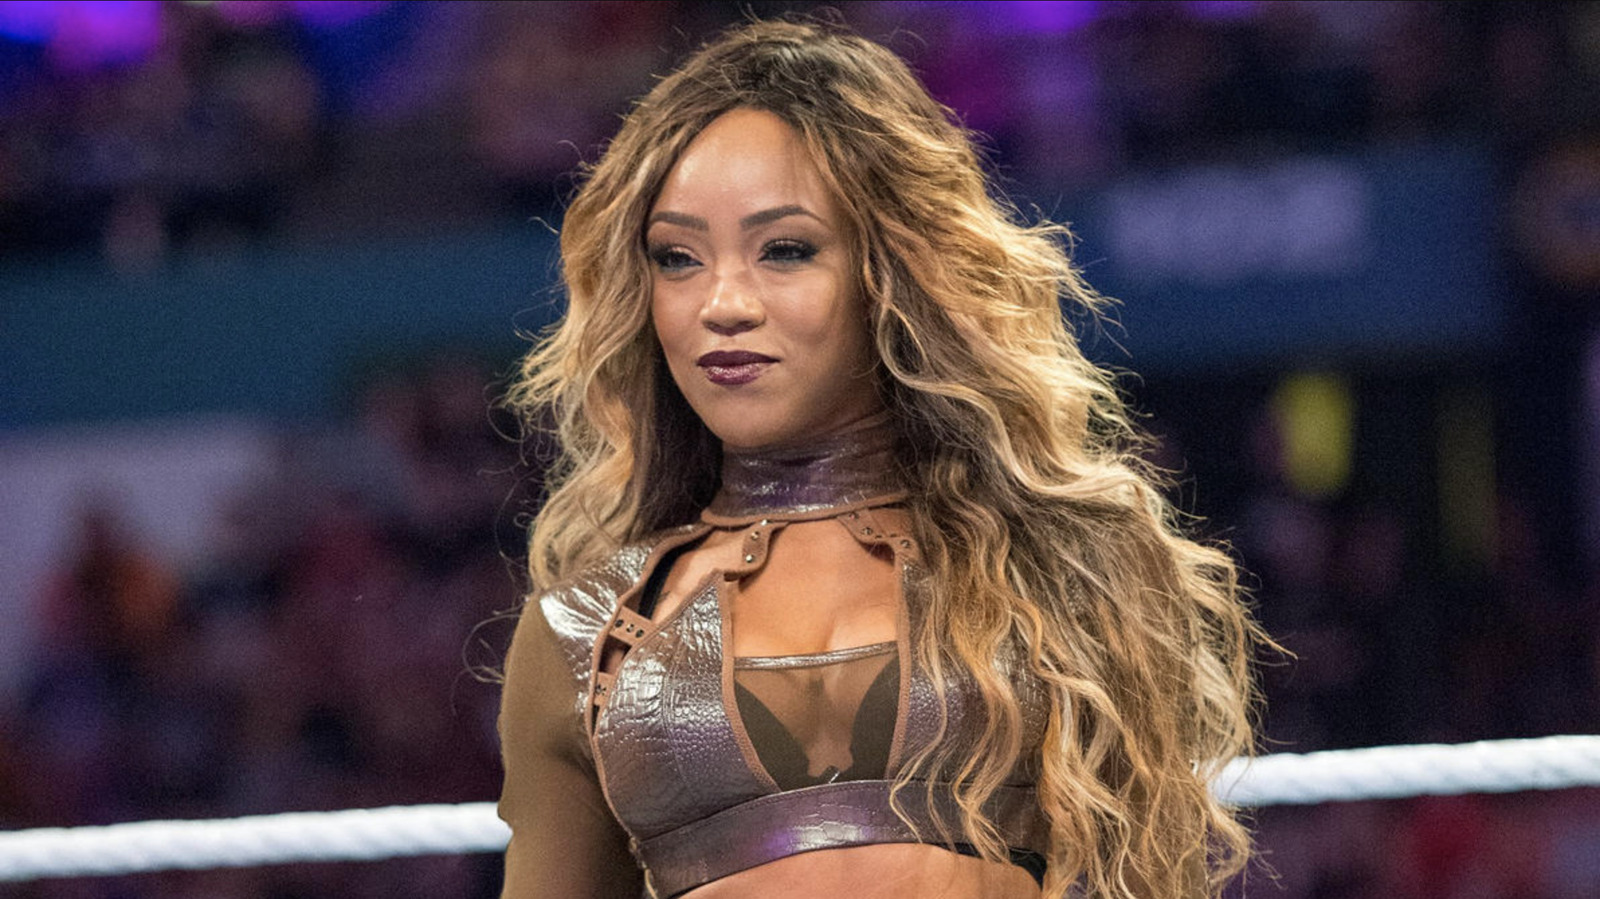 La ex superestrella de la WWE Alicia Fox aparecerá en el reality de lucha libre